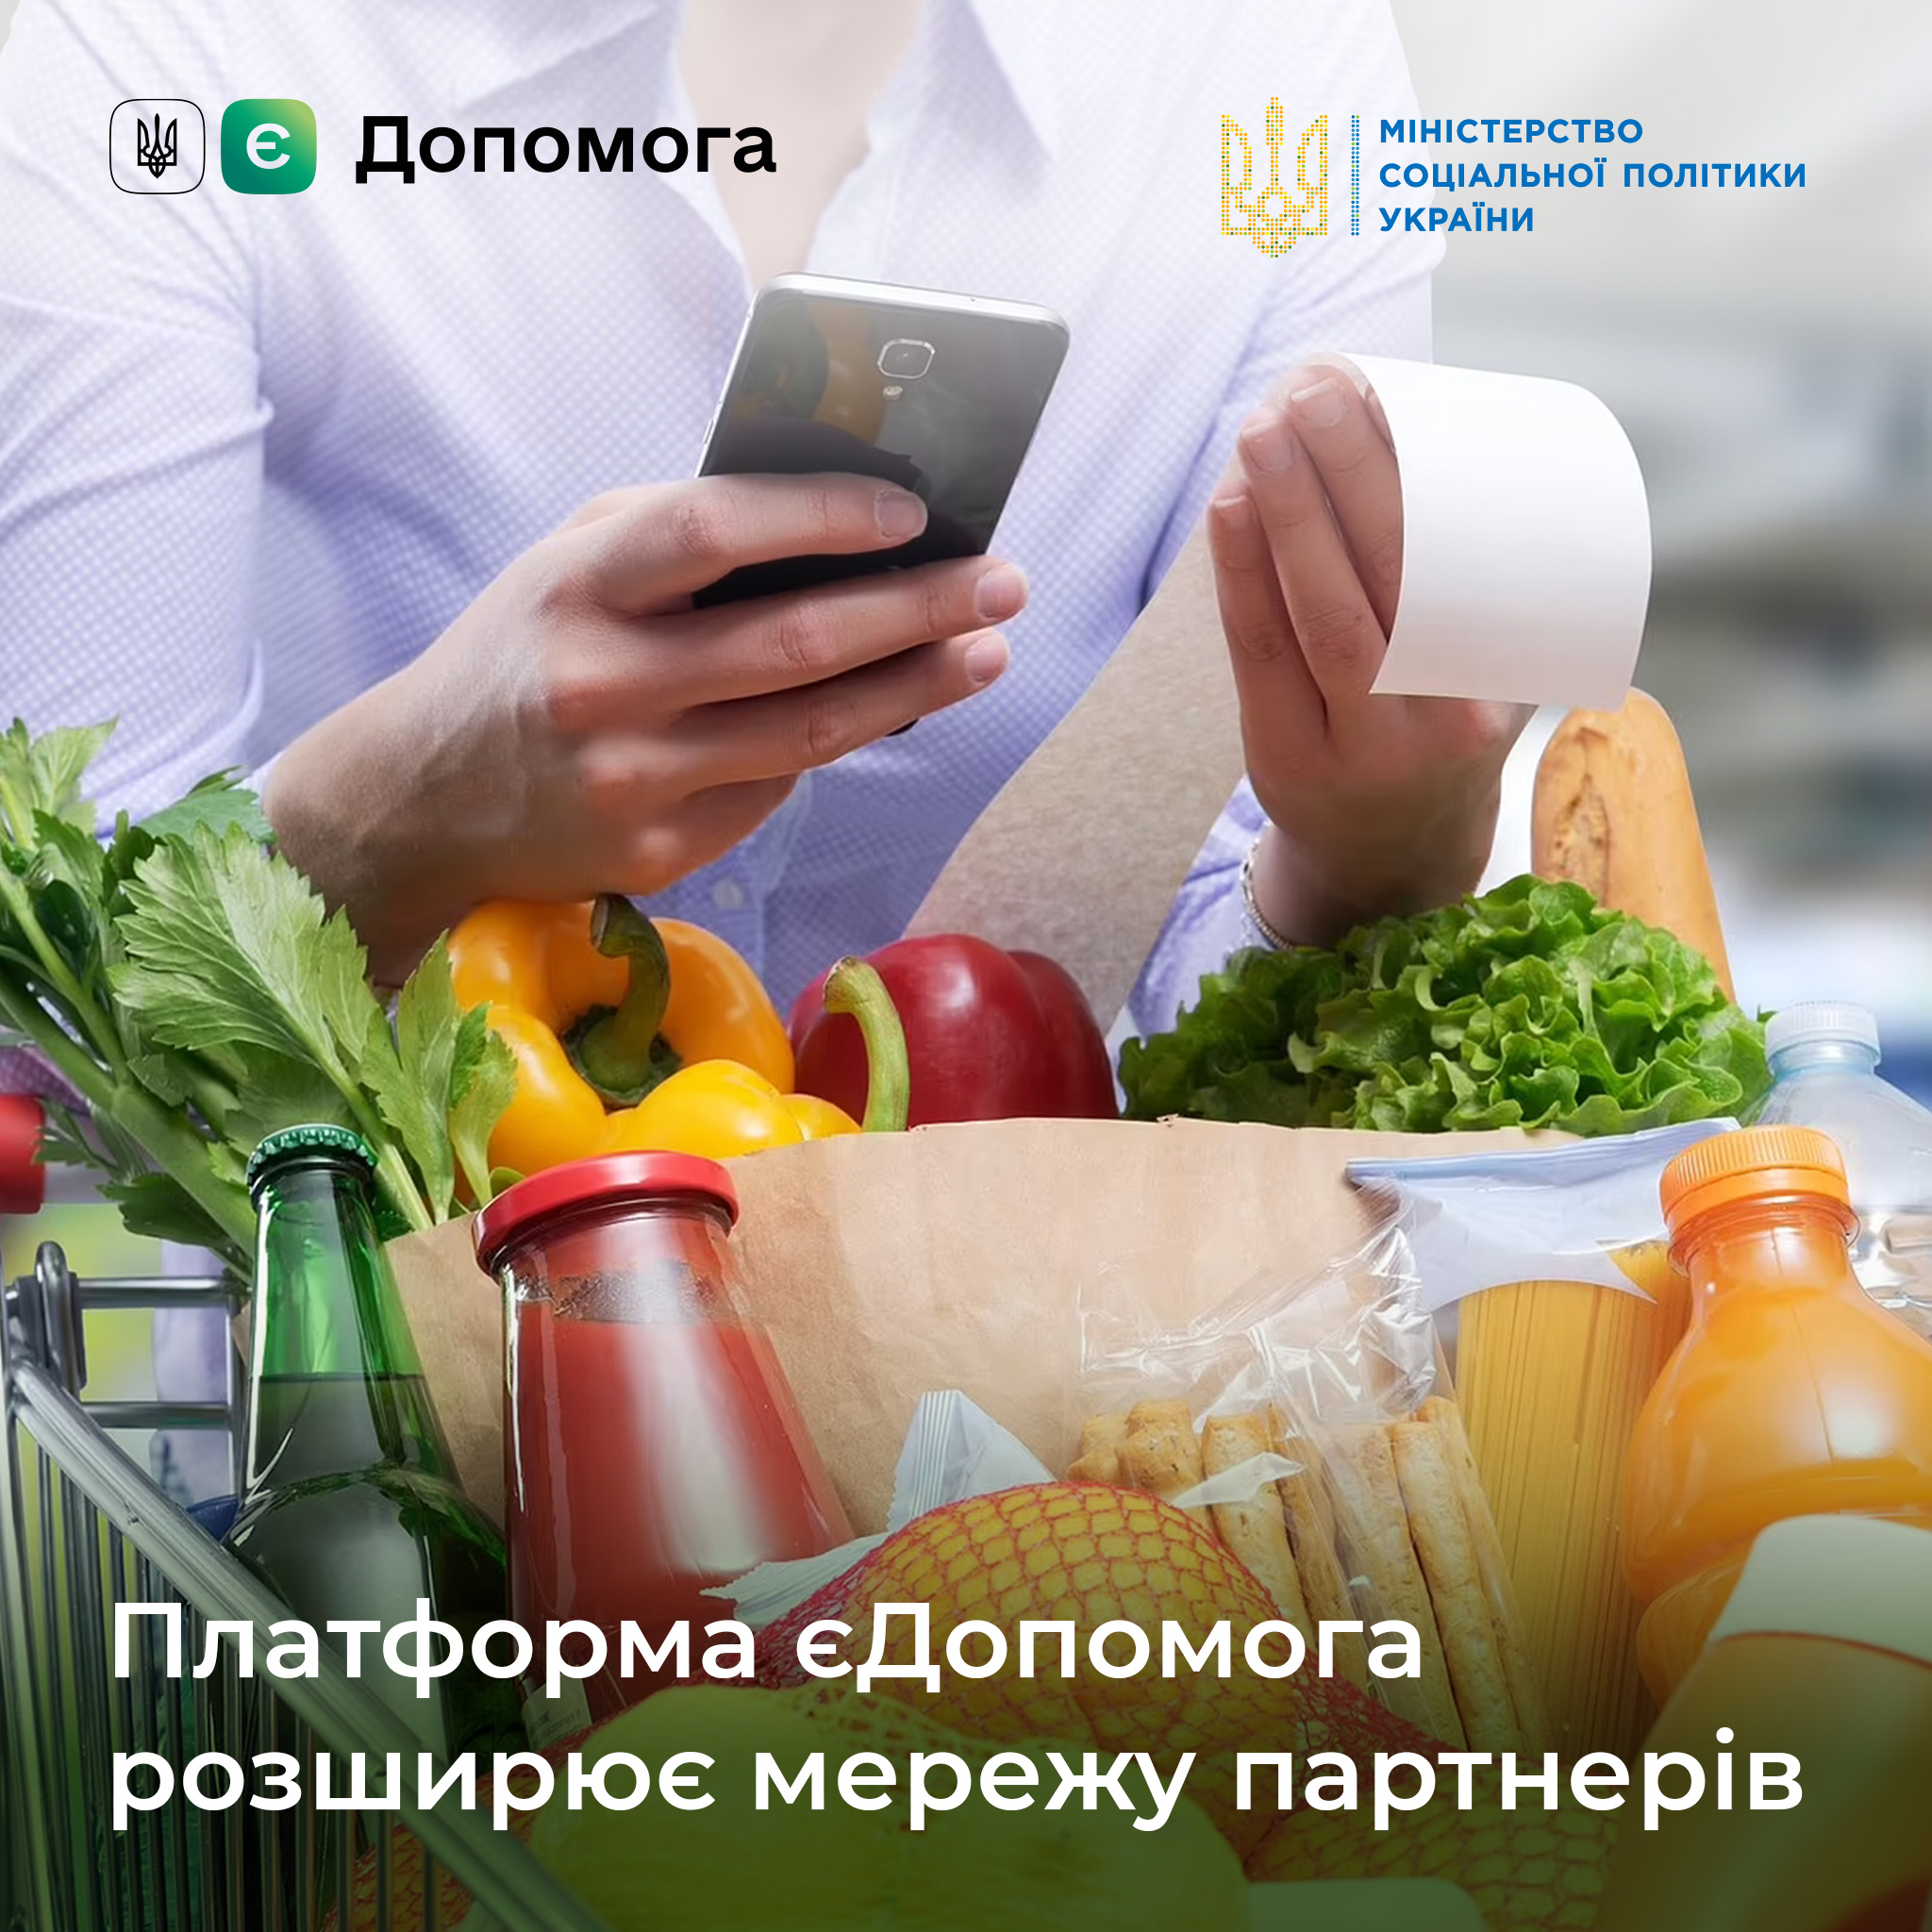 АТБ бесплатно выдает продукты украинцам через платформу “єДопомога“